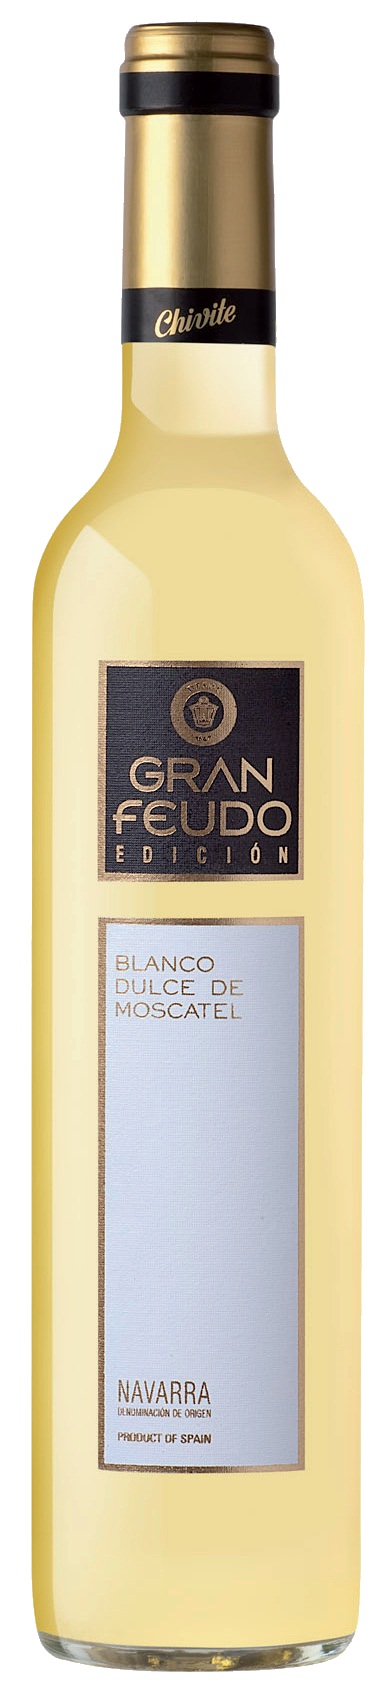 Logo Wein Gran Feudo Chivite Blanco de Moscatel